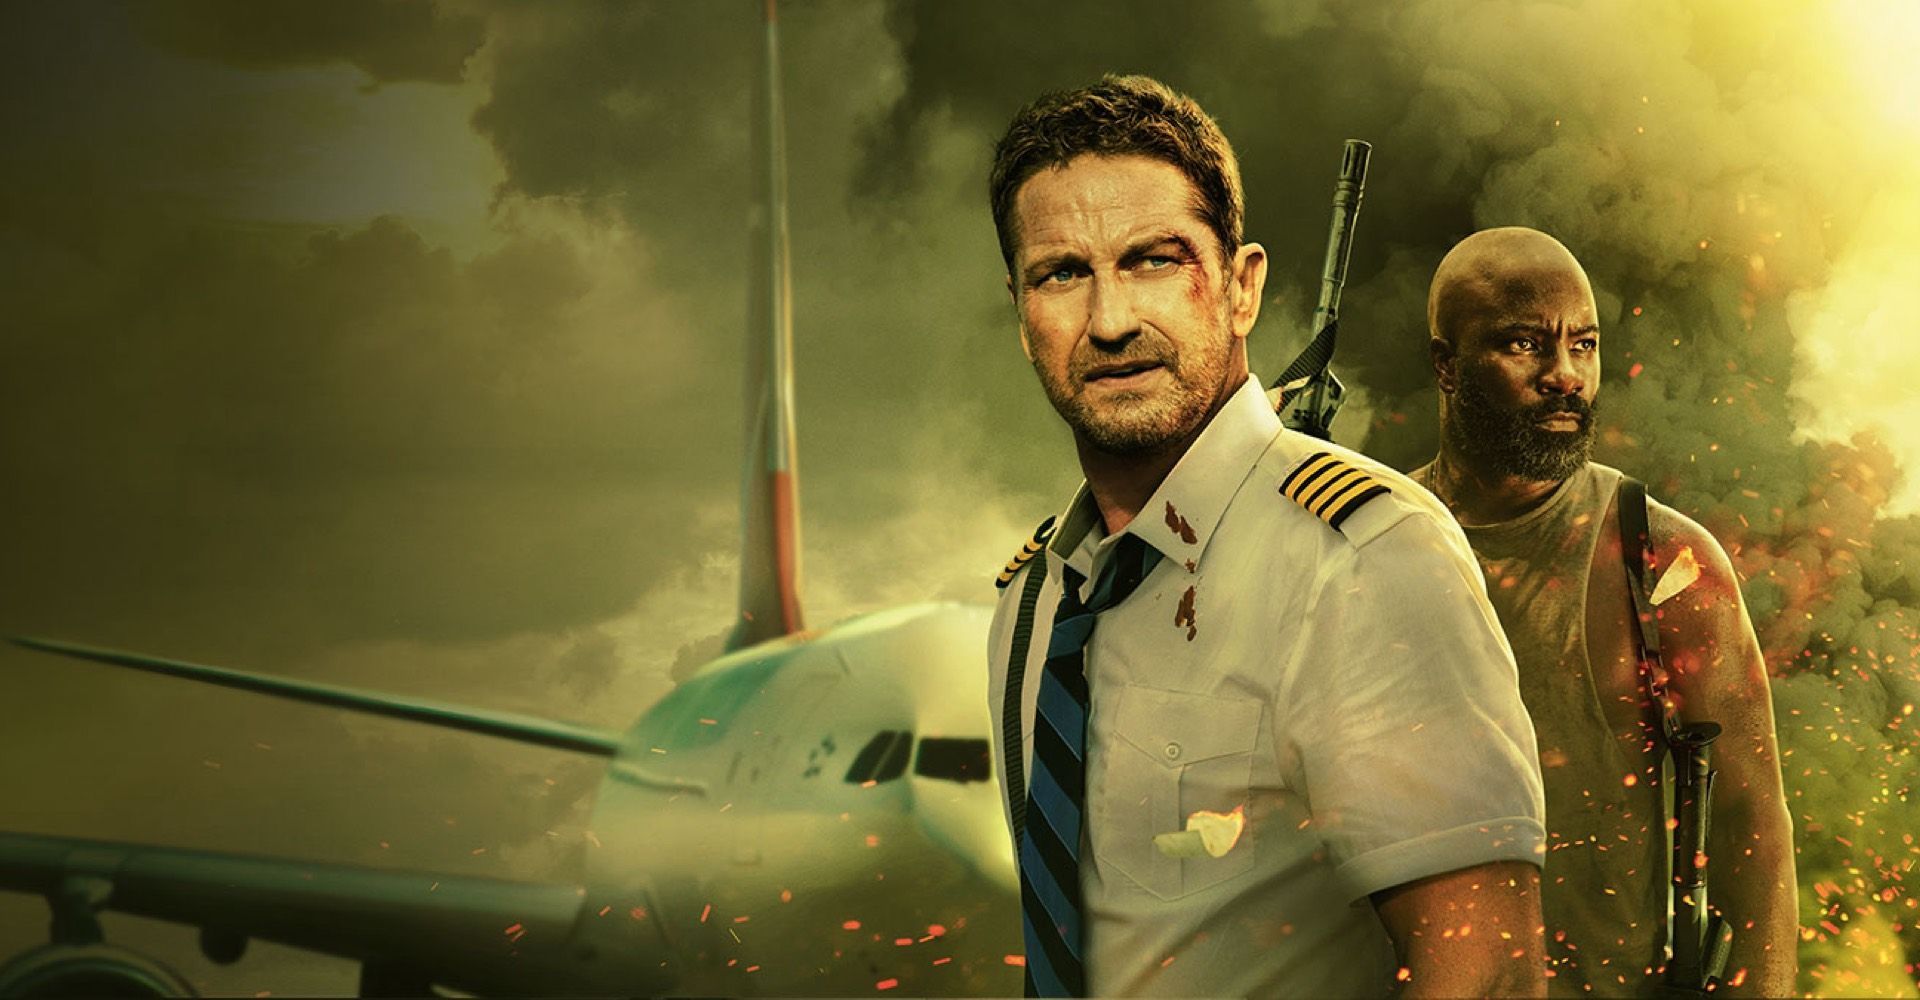 Sinopsis Film 'Plane' yang Tayang di Bioskop, Ceritakan Pesawat Mendarat Darurat di Sebuah Pulau